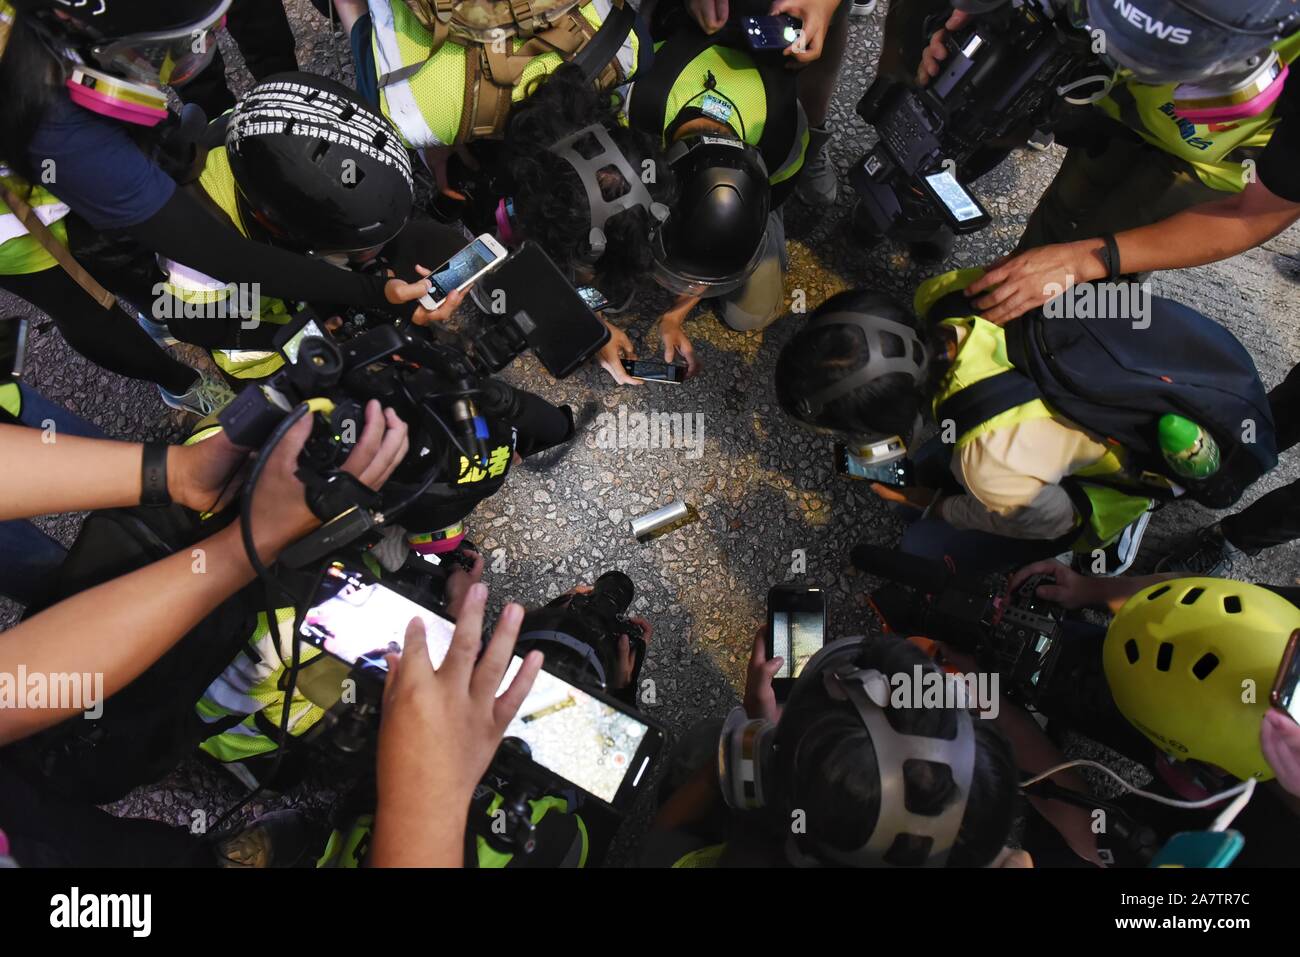 Membro della stampa di scattare delle foto di un gas lacrimogeno canister durante la protesta.Il movimento in favore della democrazia è stata originata con il coro di proteste contro la legge in materia di estradizione. Hong Kong è entrato ventiduesima settimana ha continuato a proteste di massa. Foto Stock